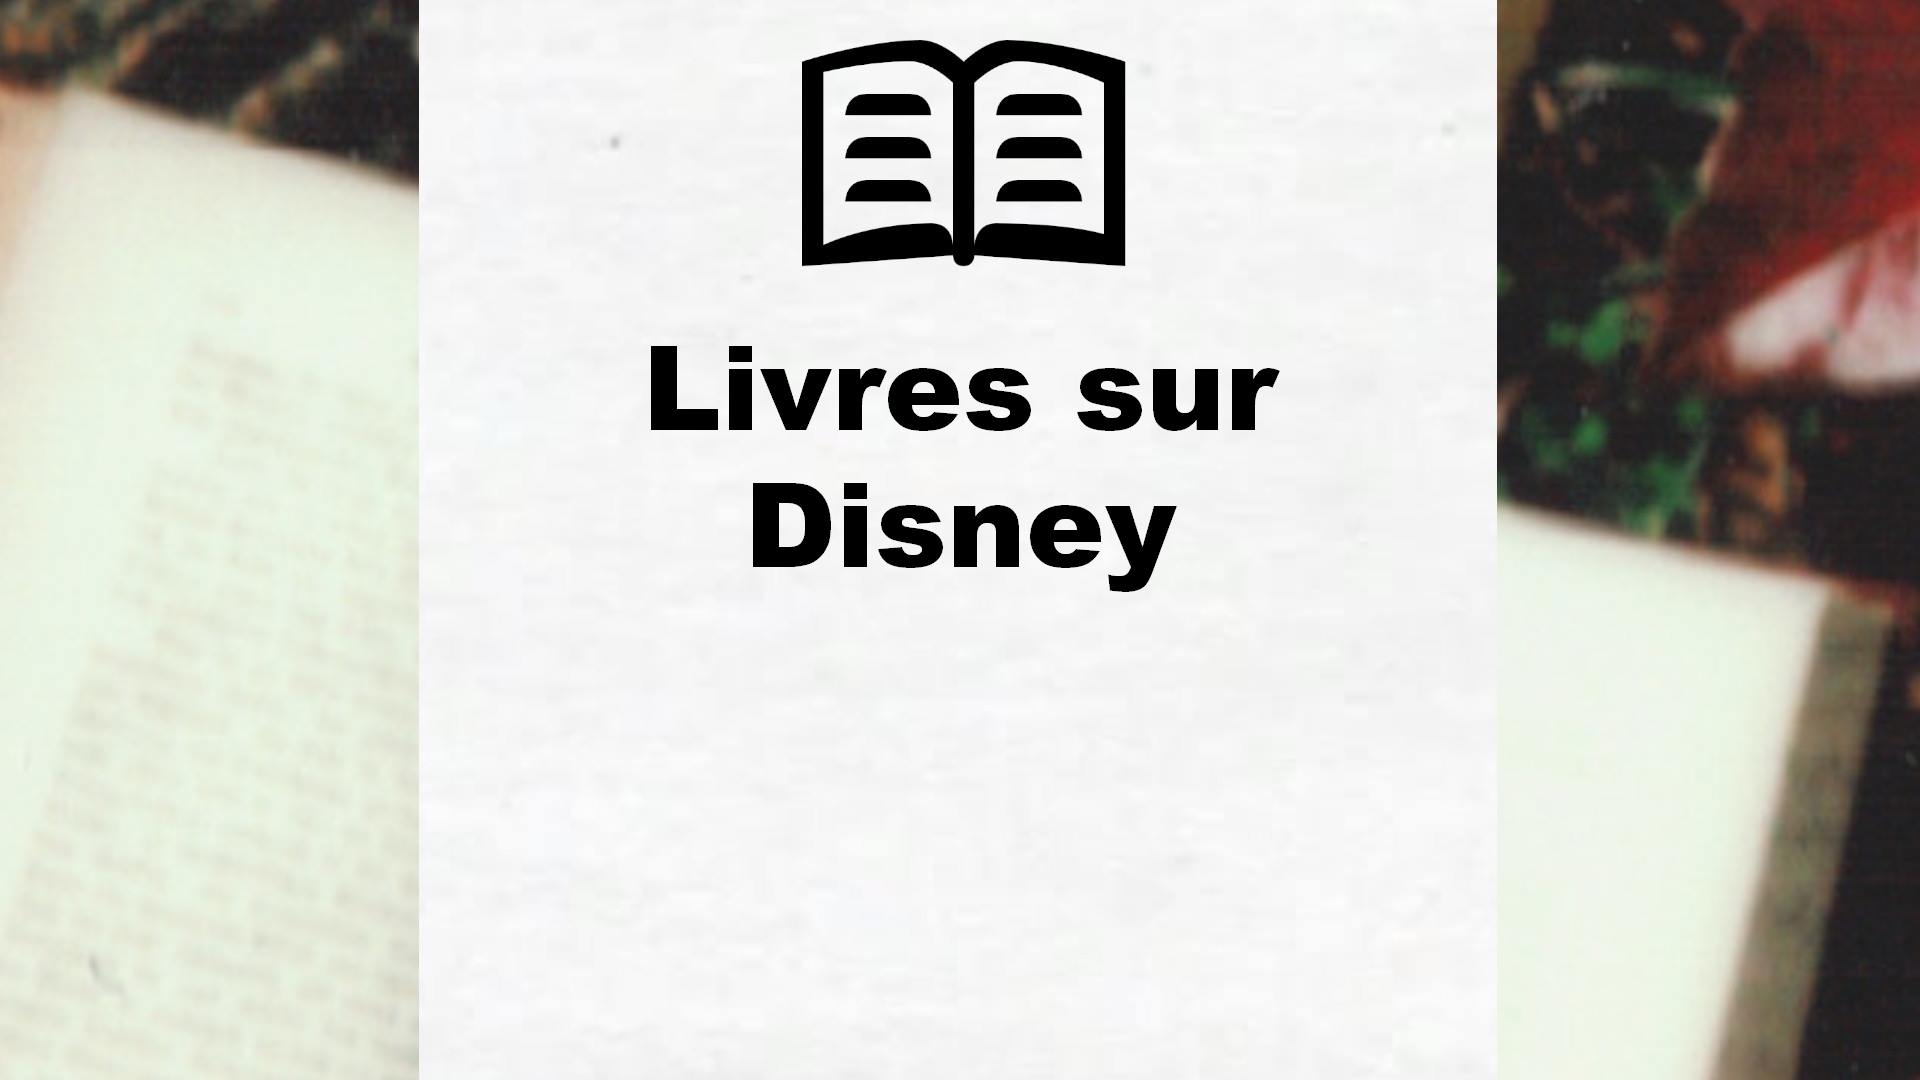 Livres sur Disney